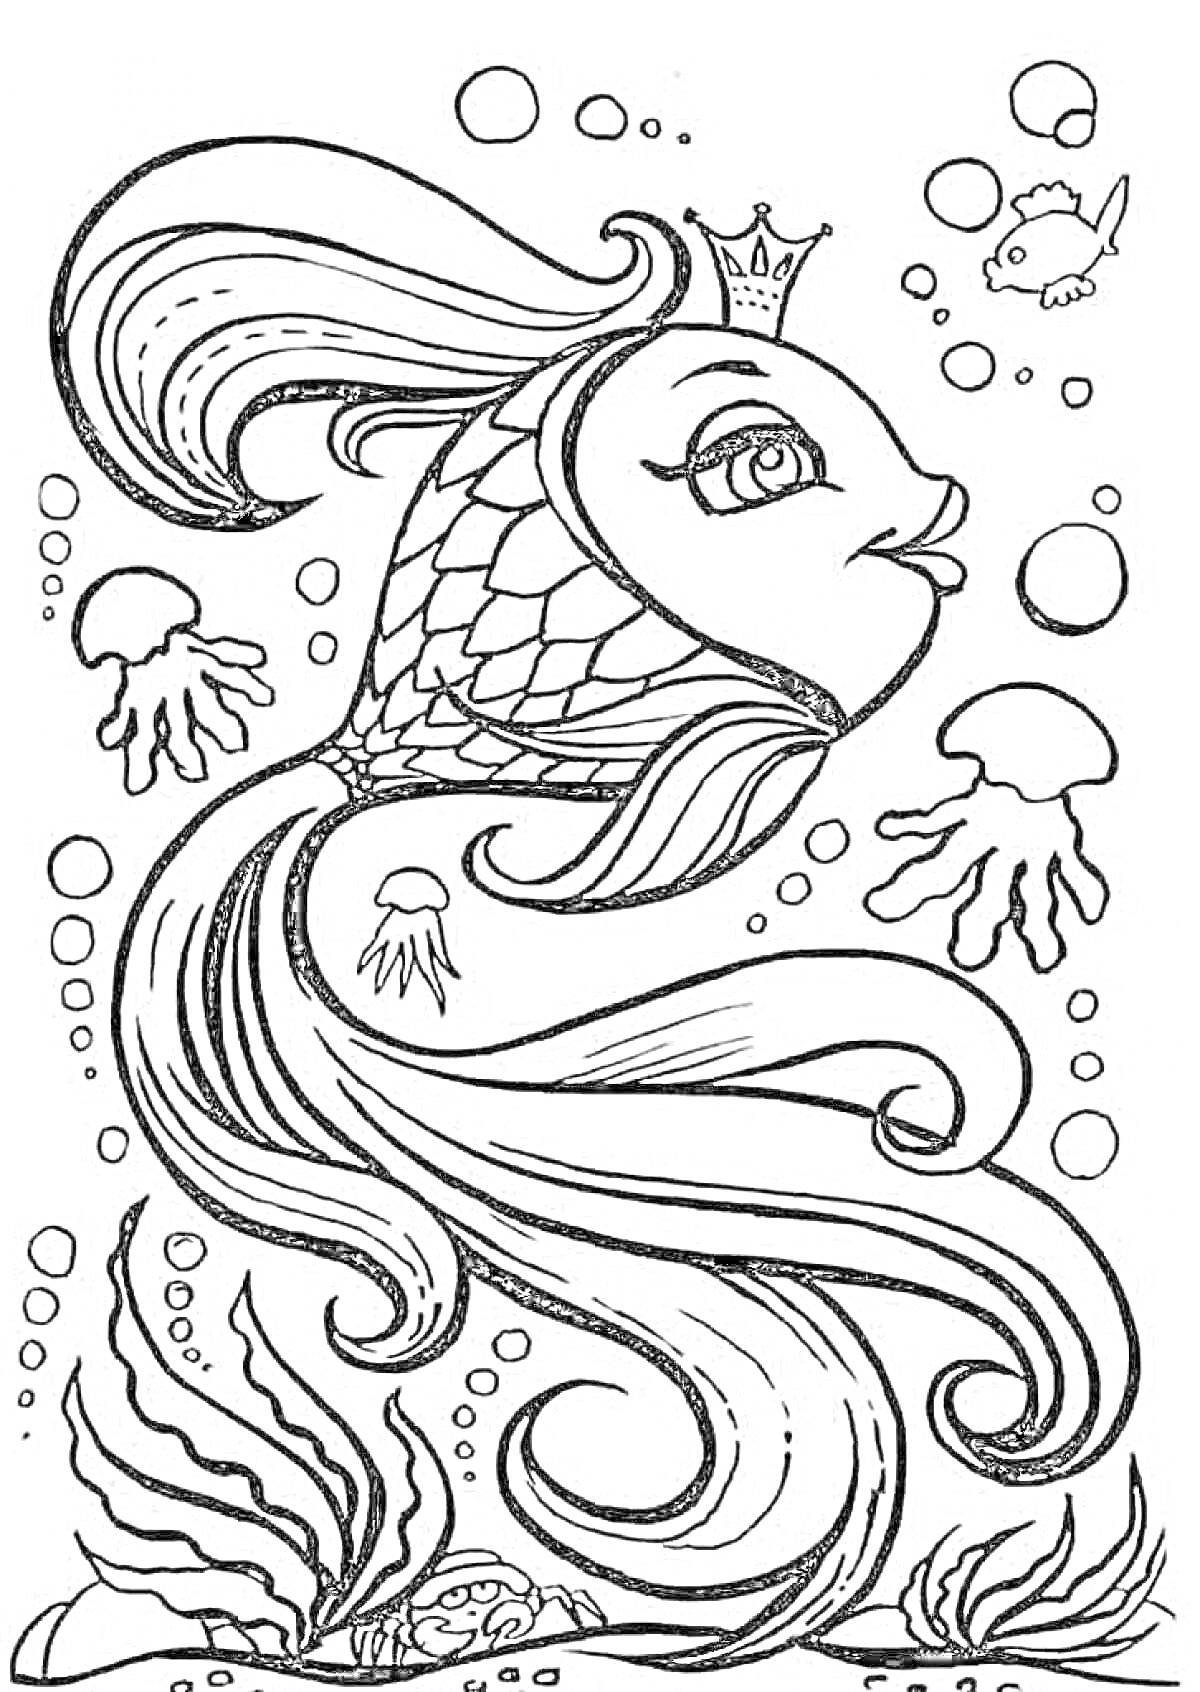 Раскраска Золотая рыбка с короной в подводном мире, медузы, маленькая рыбка, водоросли и пузыри